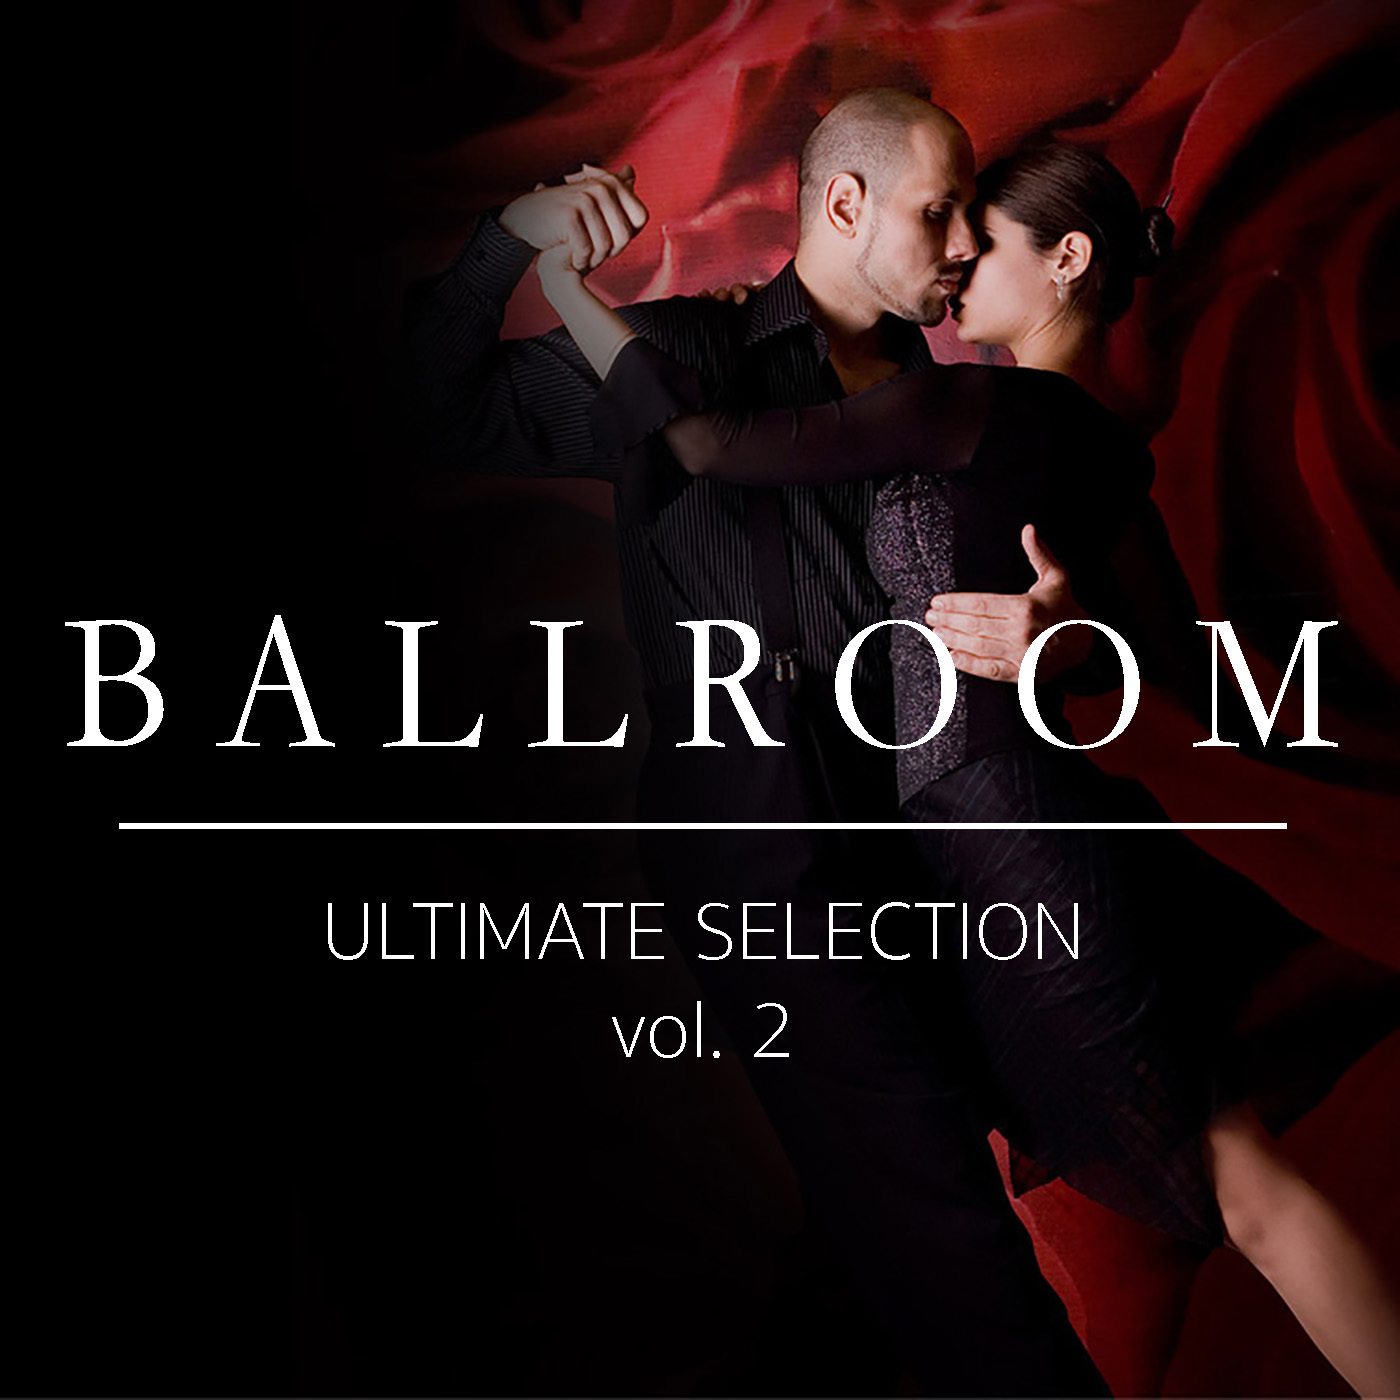 Ballroom Ultimate Selection vol. 2